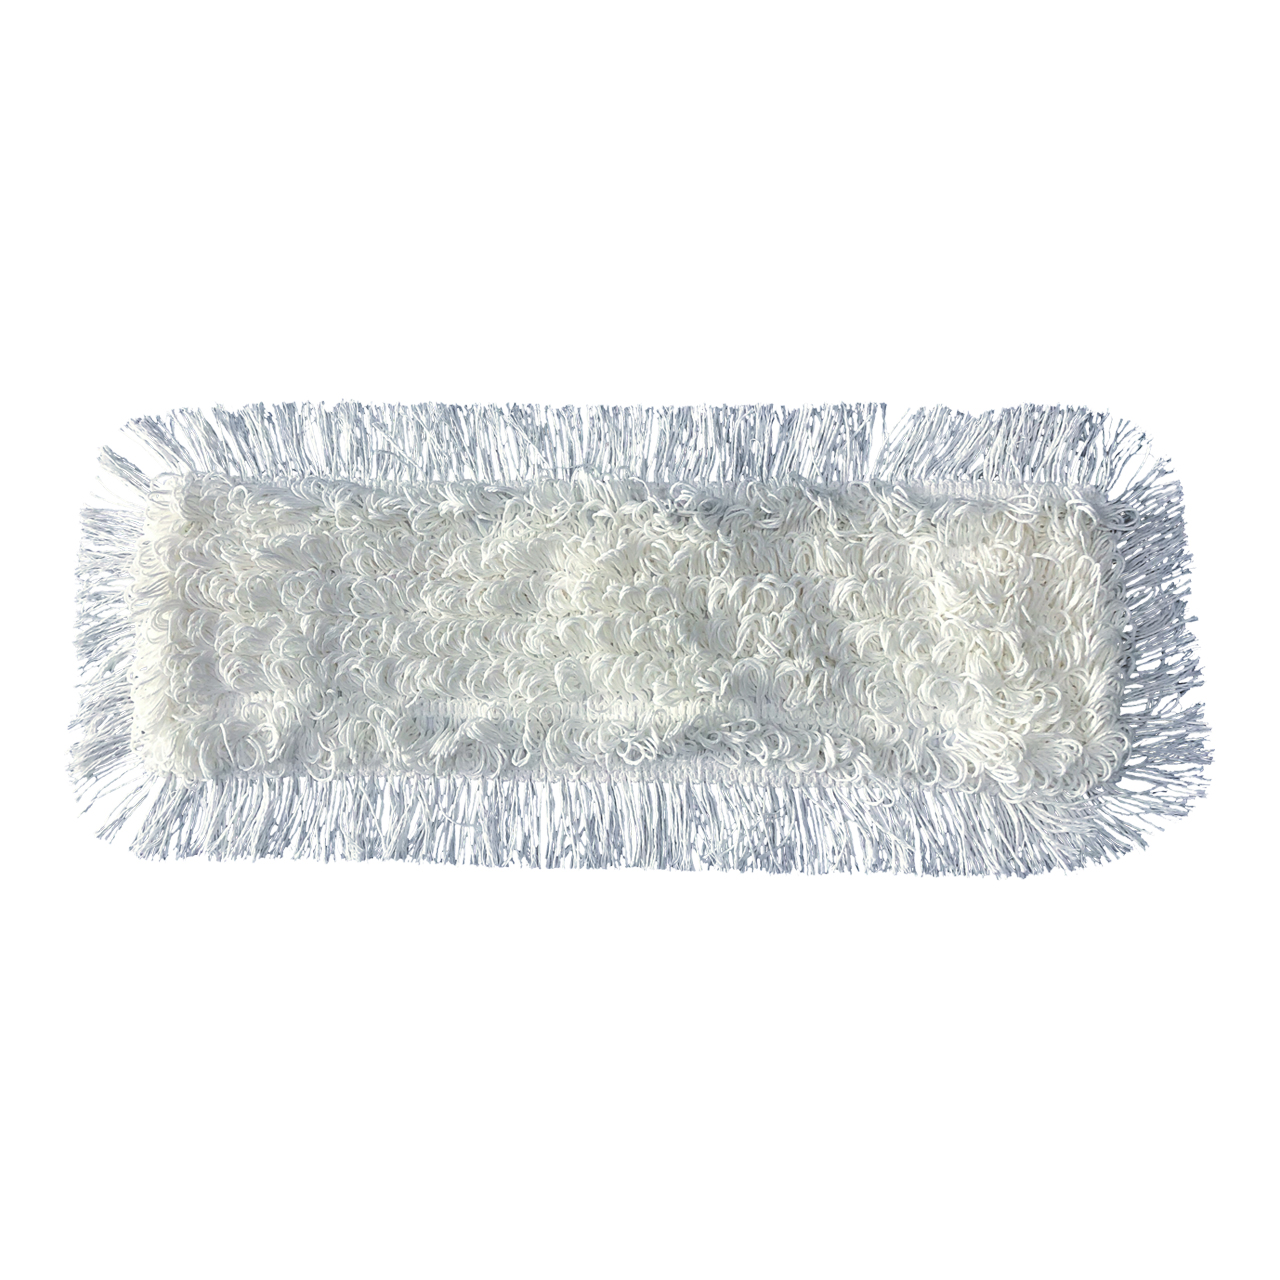 axiquip® Mop coton/viscose-Ryan 40 cm